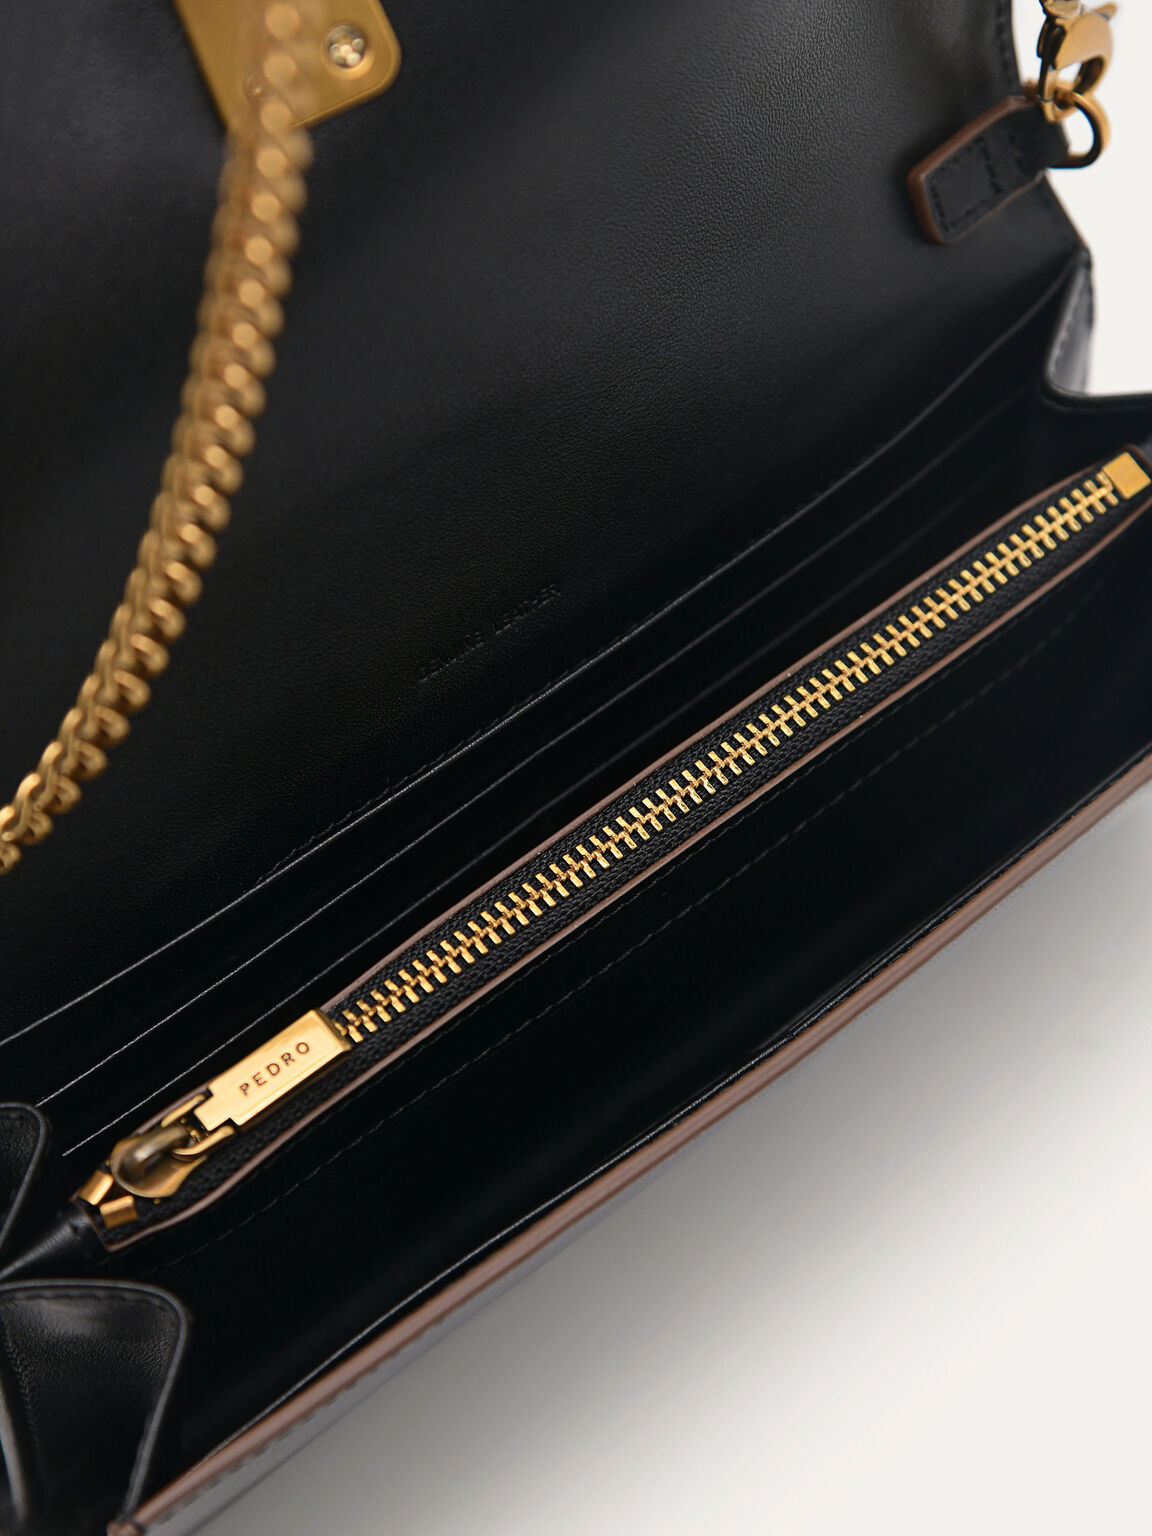 Leather Wallet Bag, Black